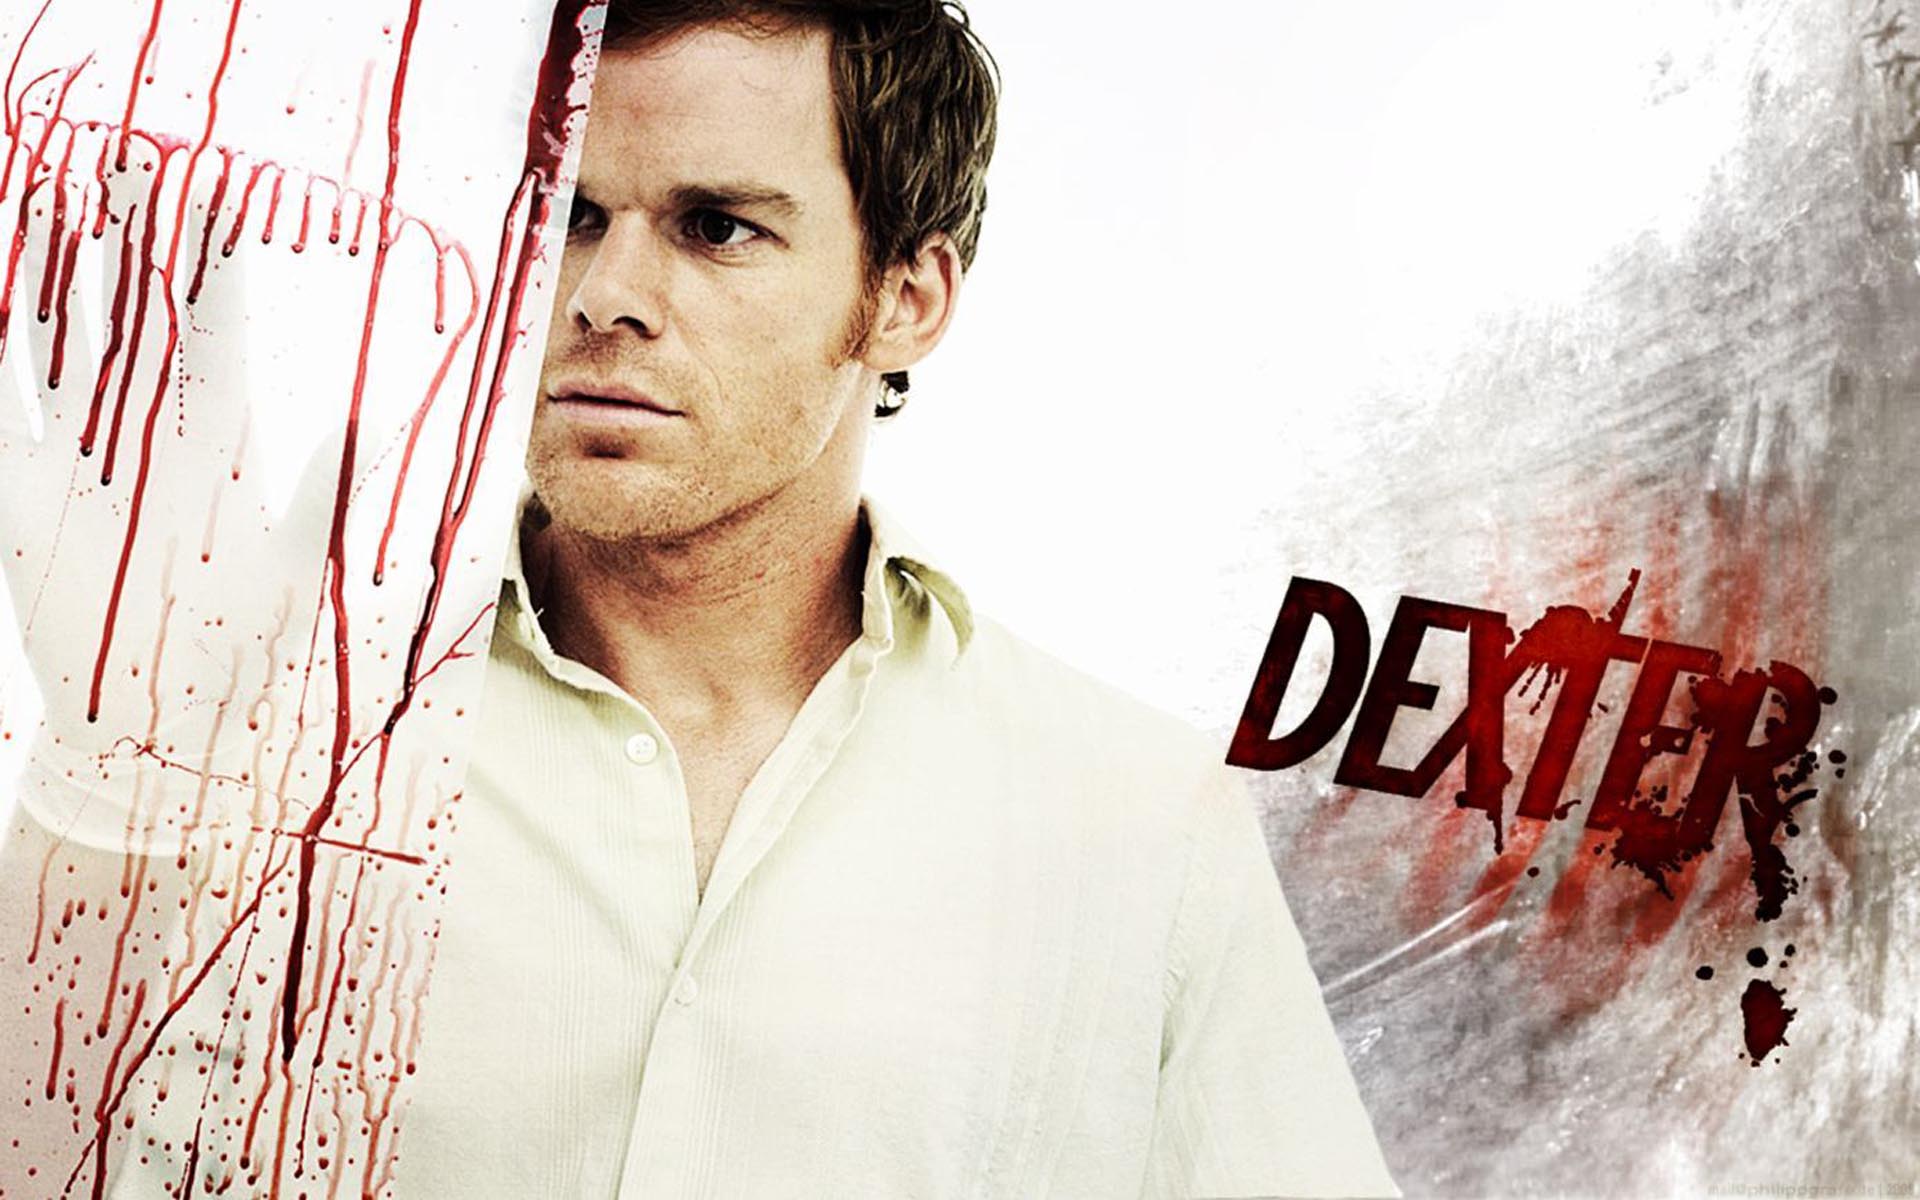 Dexter 1. séria online seriál